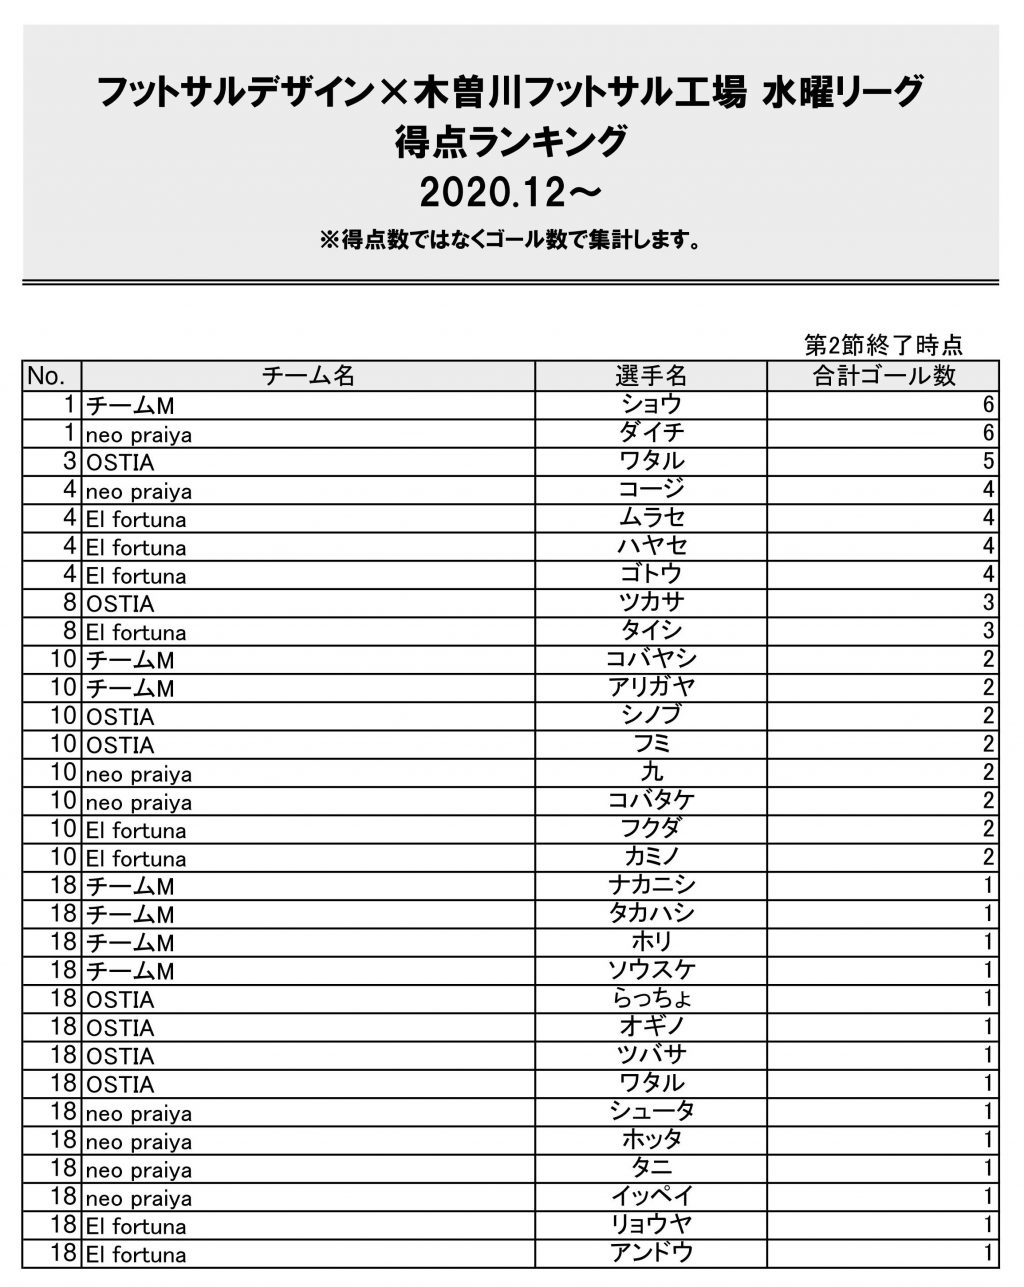 フットサルデザイン木曽川水曜リーグ得点ランキング20210118